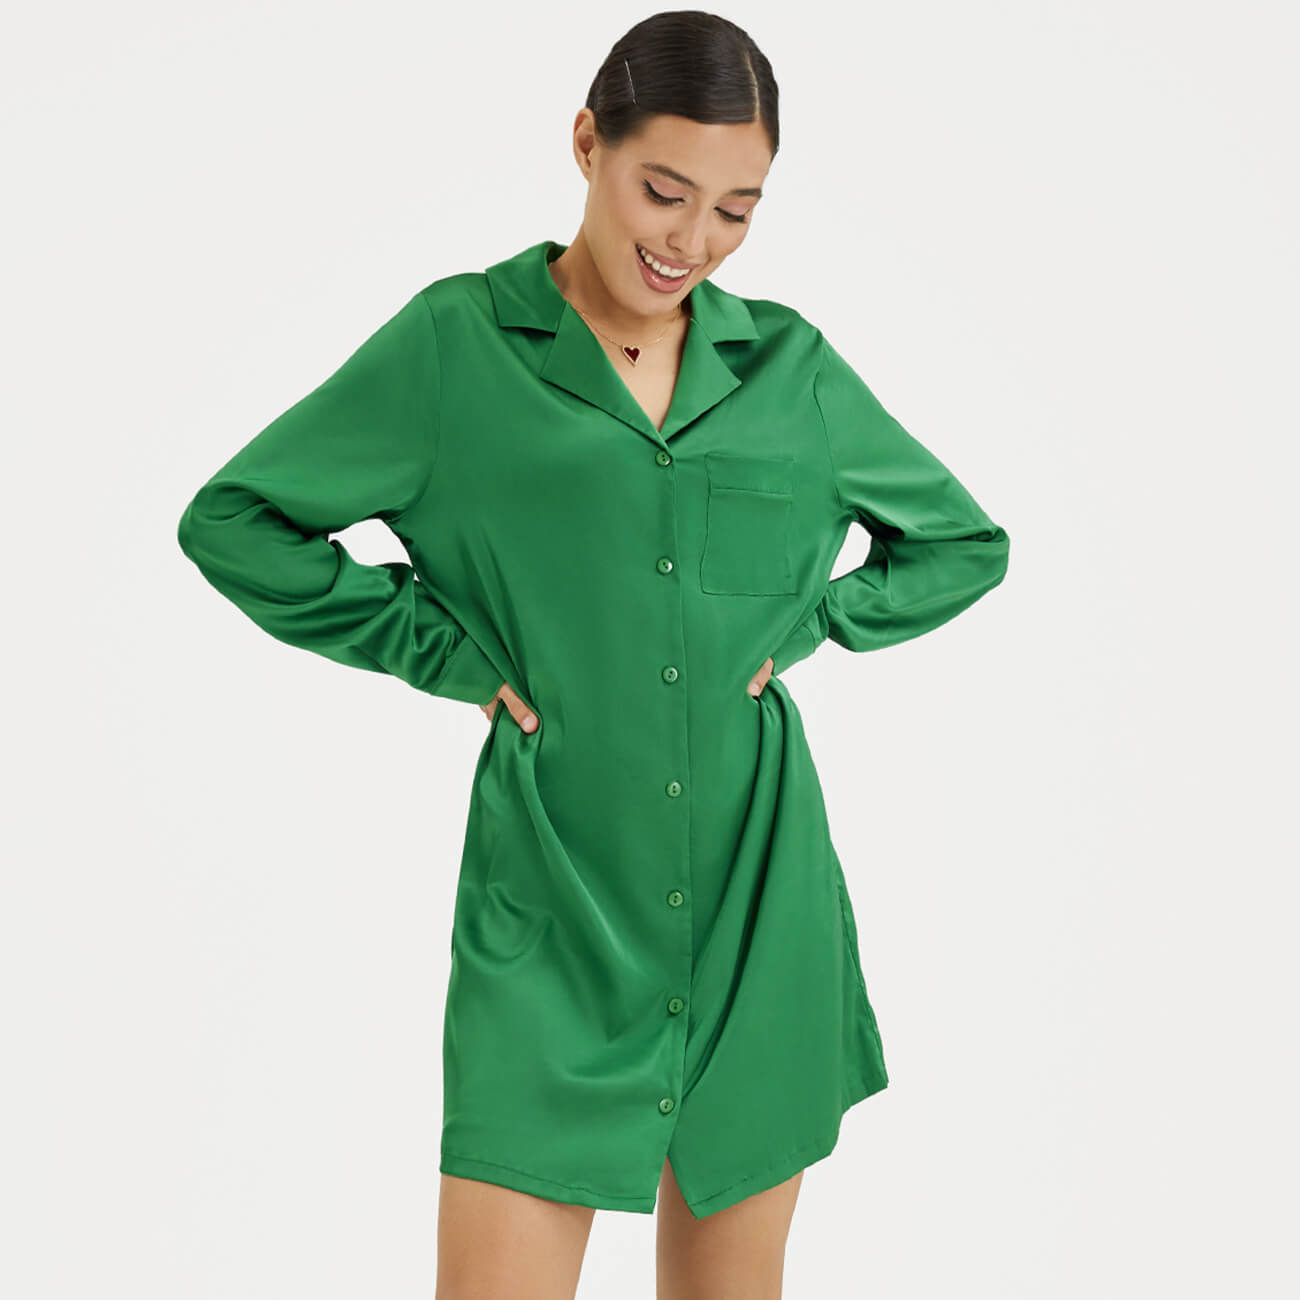 Рубашка женская, р. XL, удлиненная, с длинным рукавом, полиэстер/эластан, зеленая, Madeline рубашка женская р l удлиненная с длинным рукавом полиэстер эластан зеленая madeline